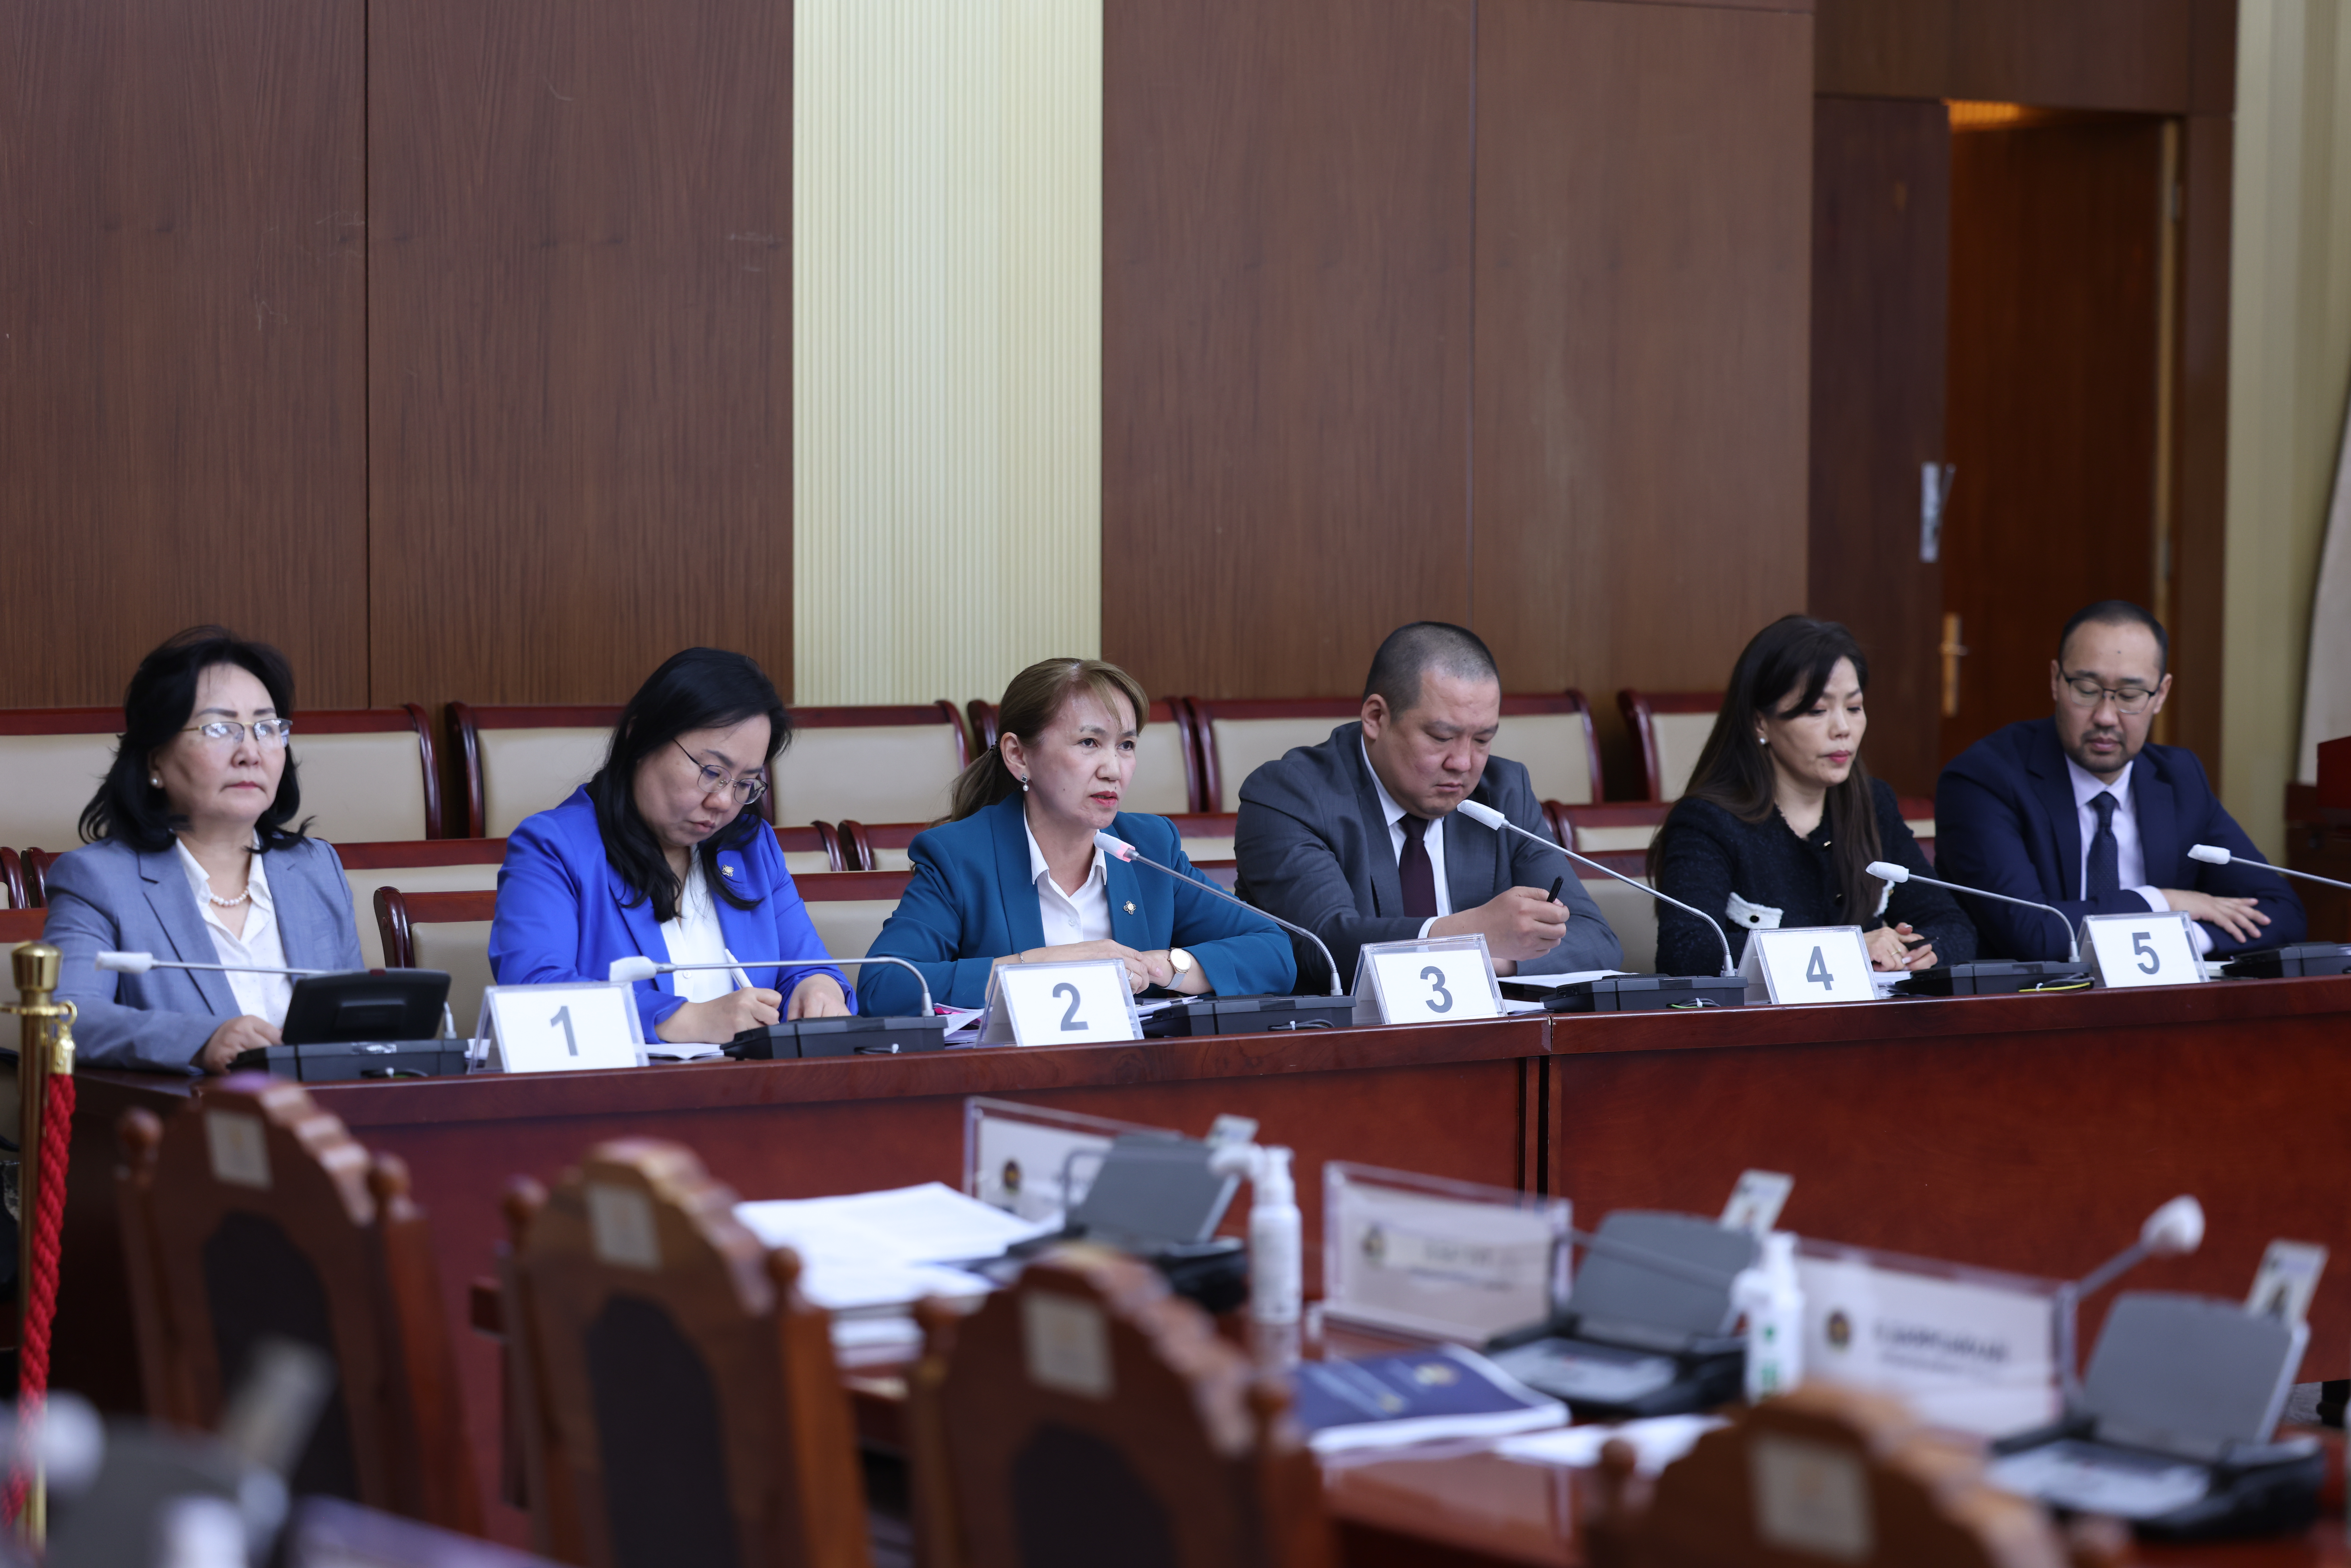 УИХ-ын нэгдсэн чуулганаар Монгол Улс дахь Хүний эрх, эрх чөлөөний байдлын талаарх 23 дахь илтгэлийг хэлэлцлээ